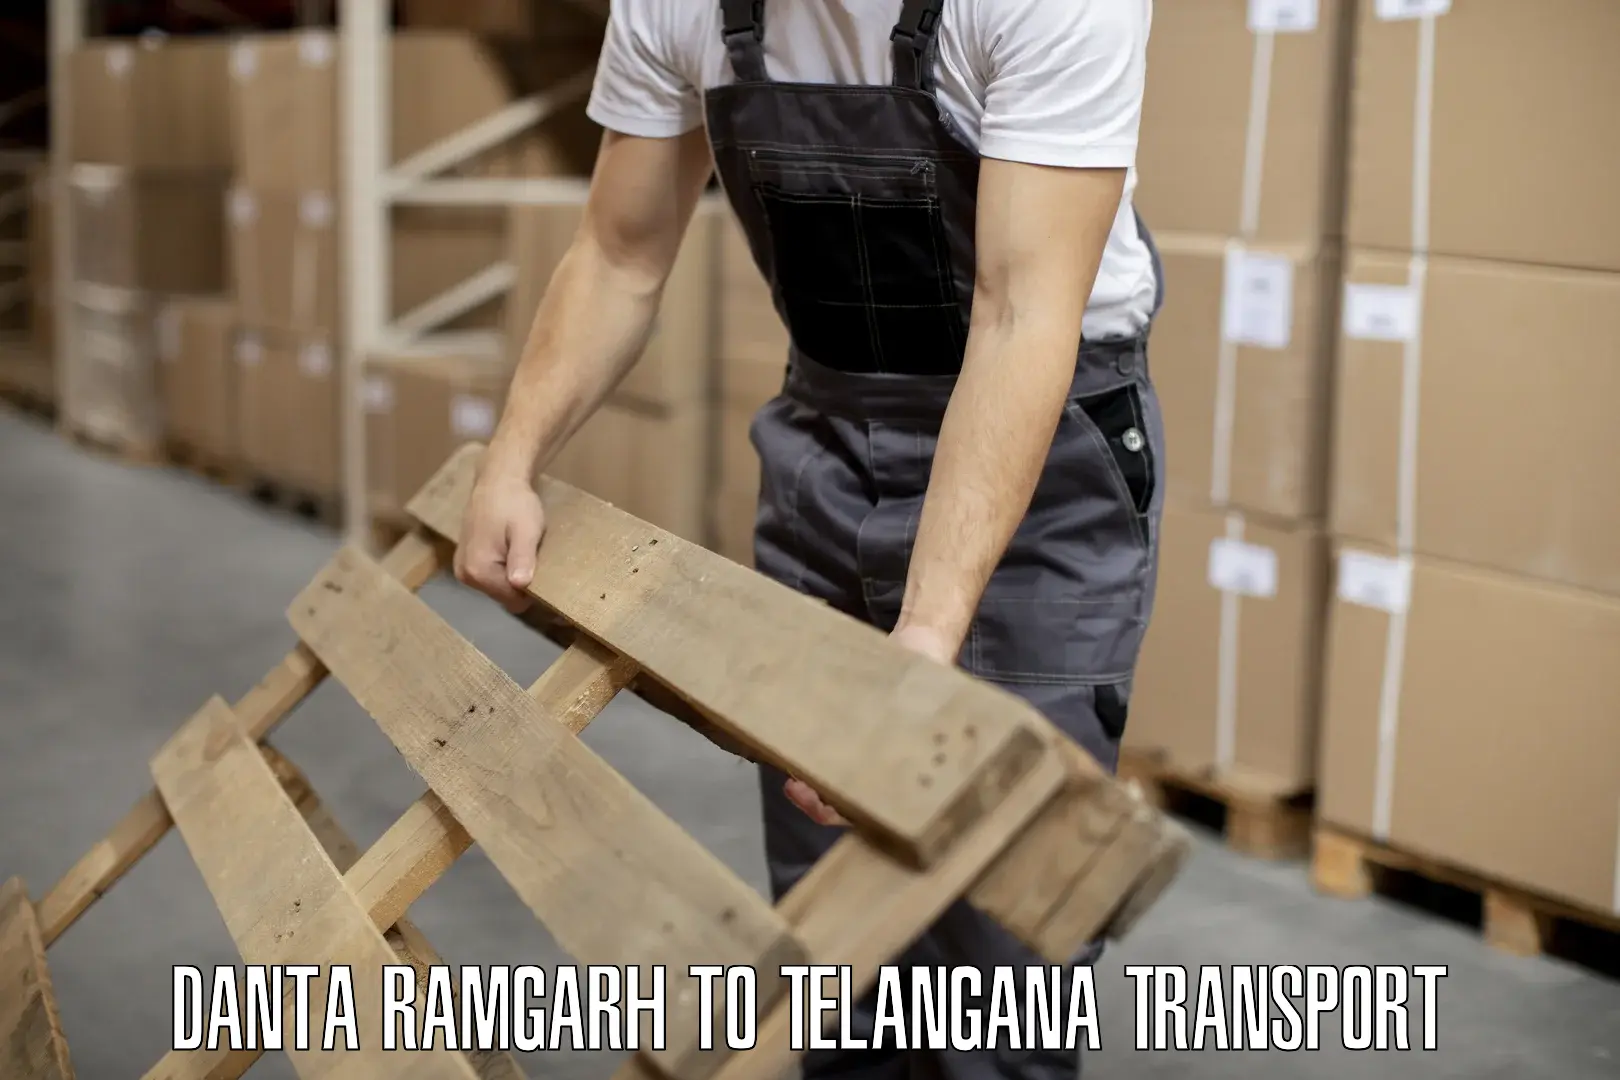 Delivery service Danta Ramgarh to Tallada